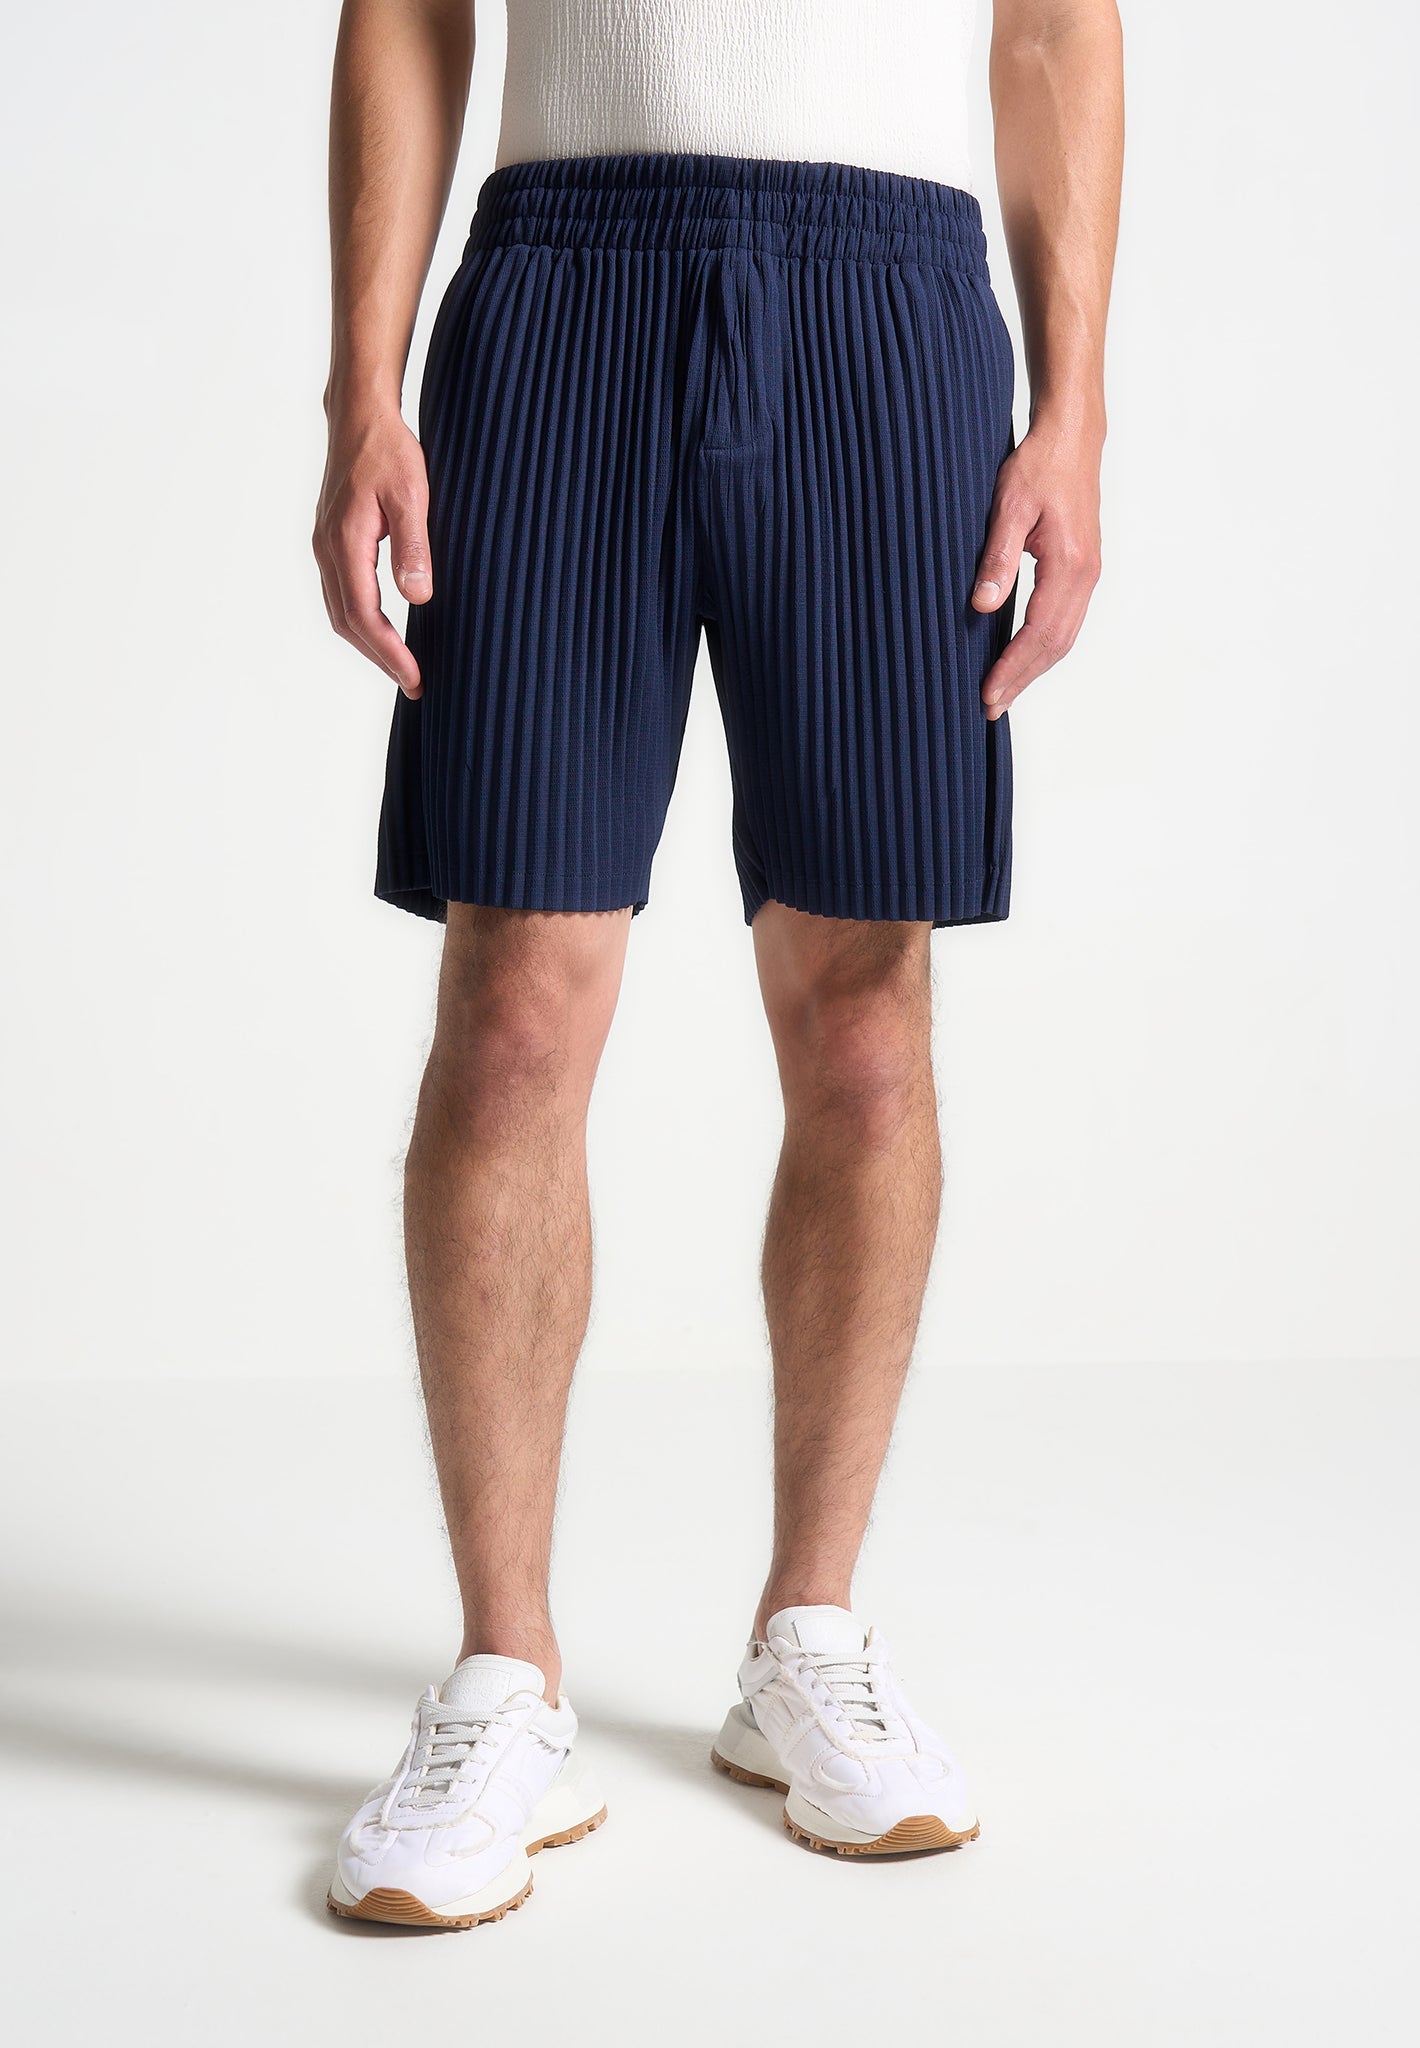 pleated-shorts-navy